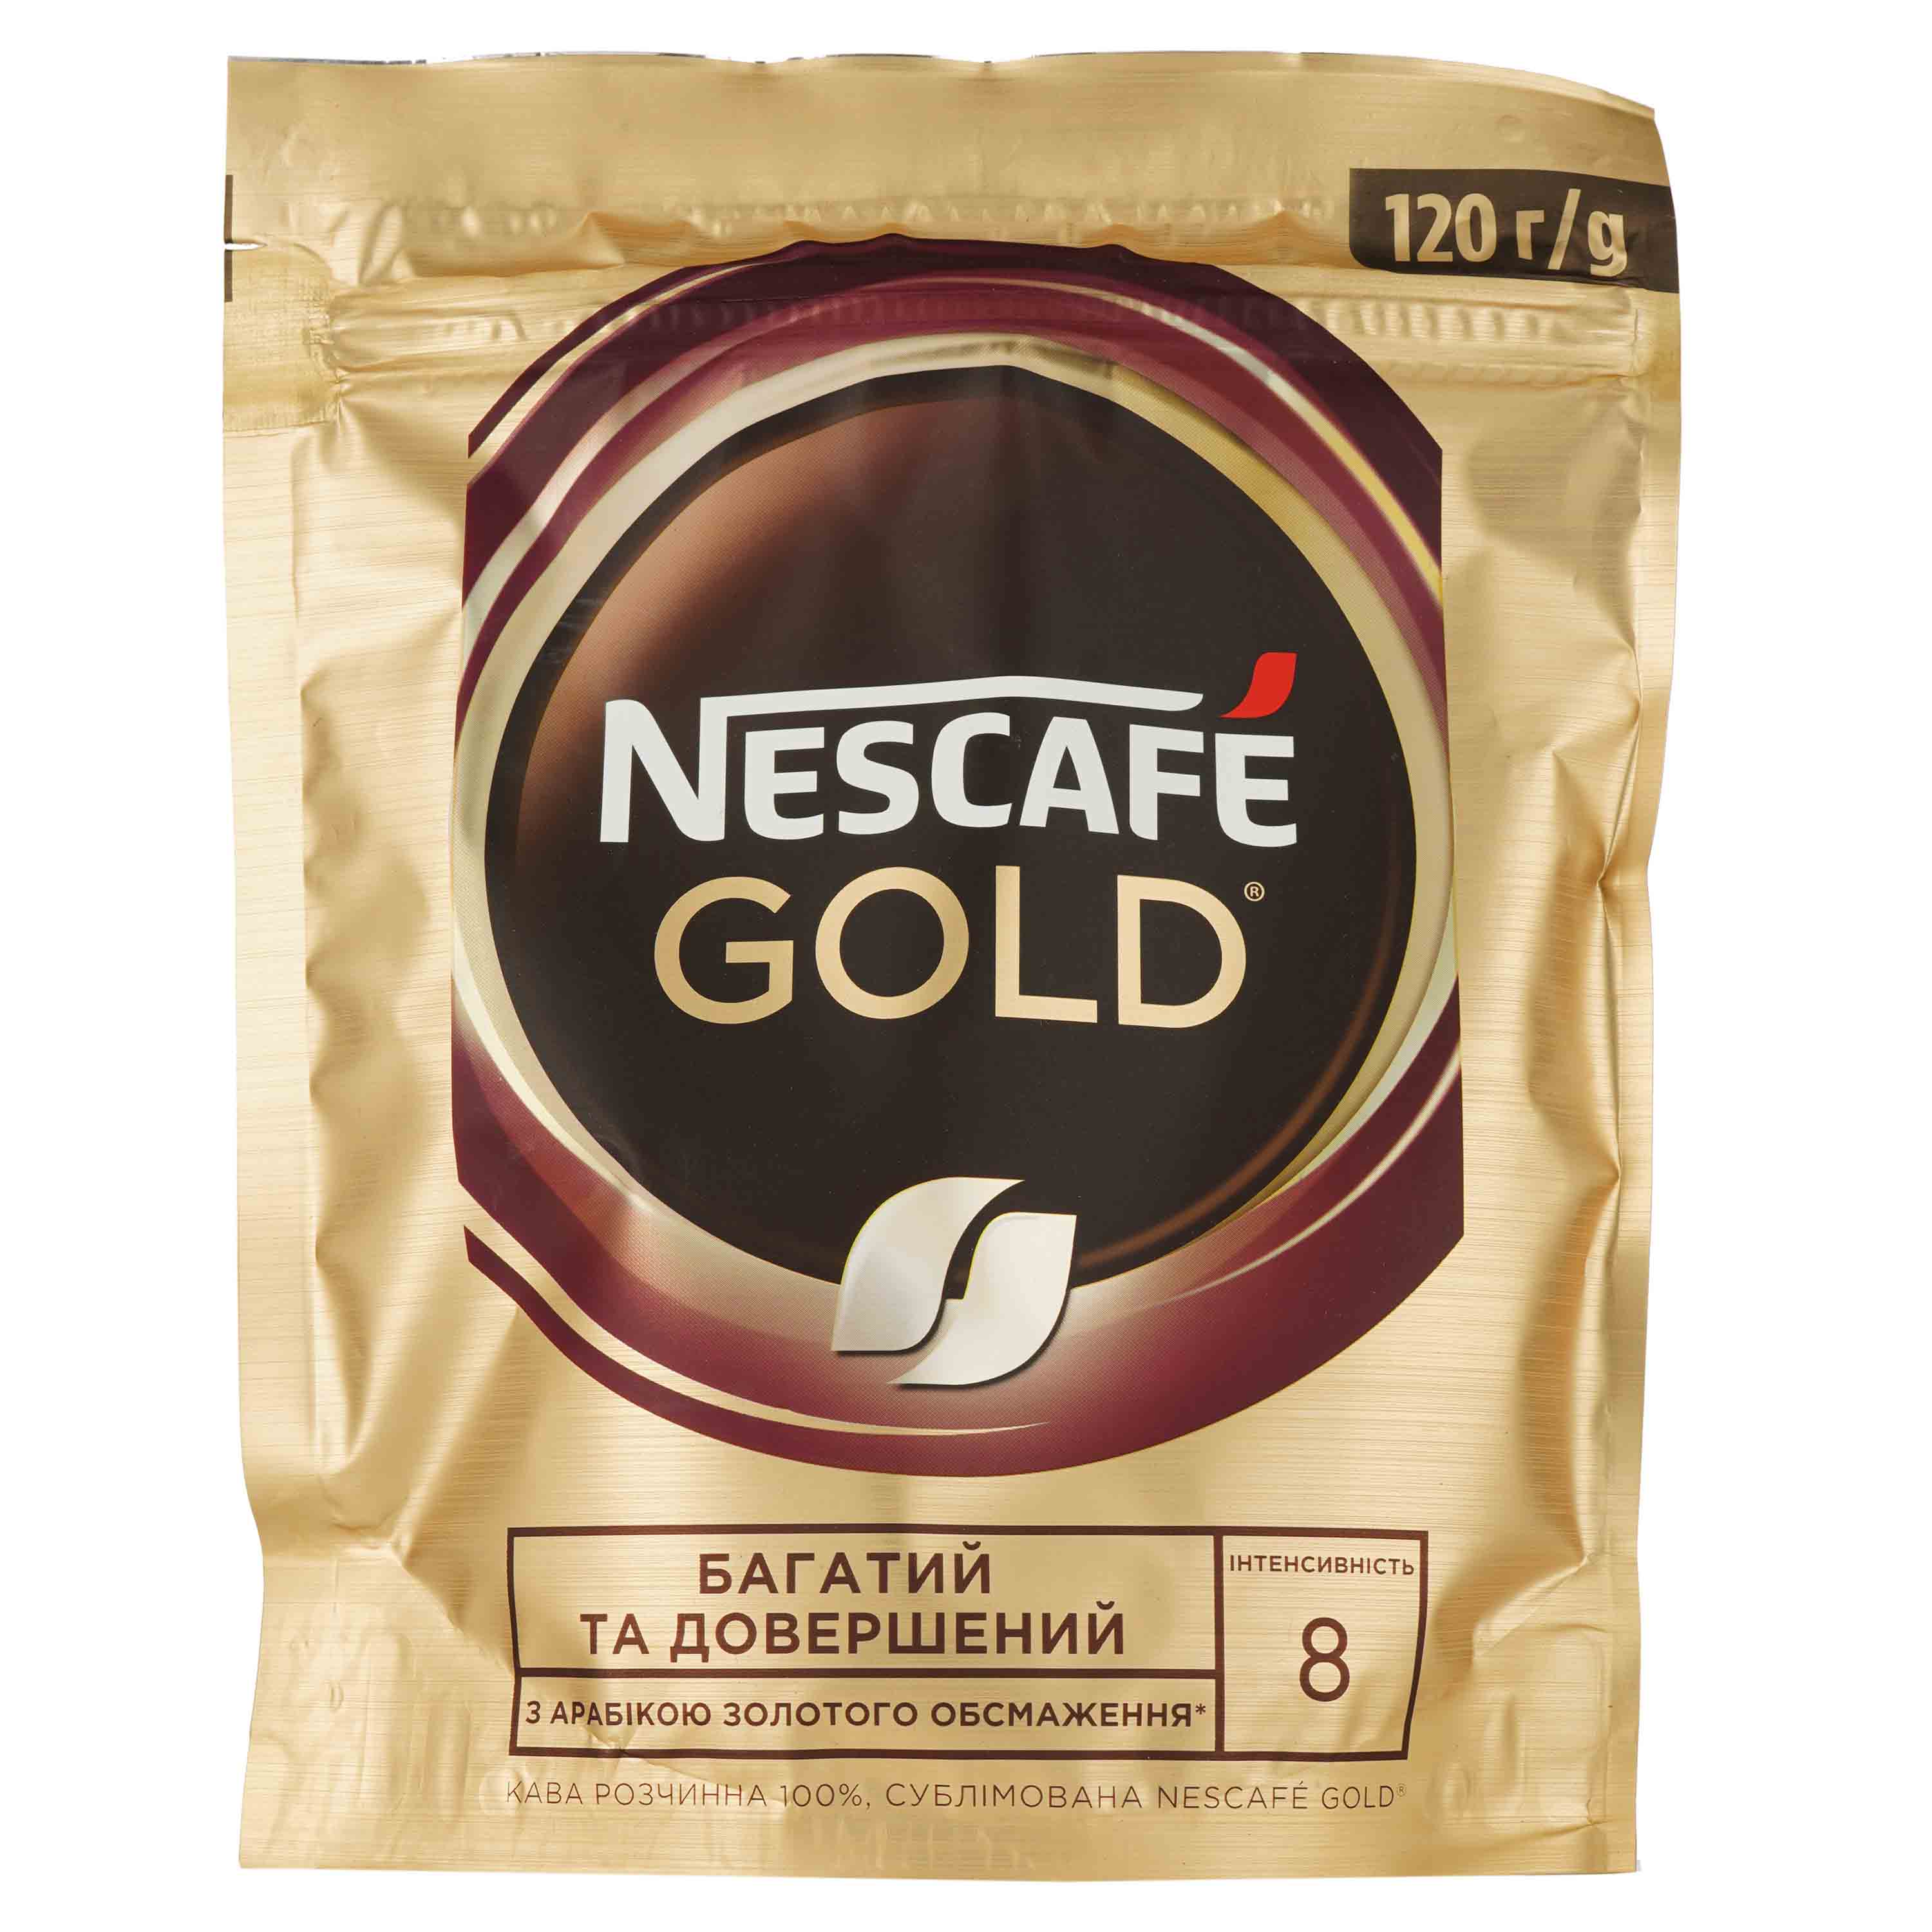 Кофе растворимый Nescafe Gold, 120 г (663485) - фото 1